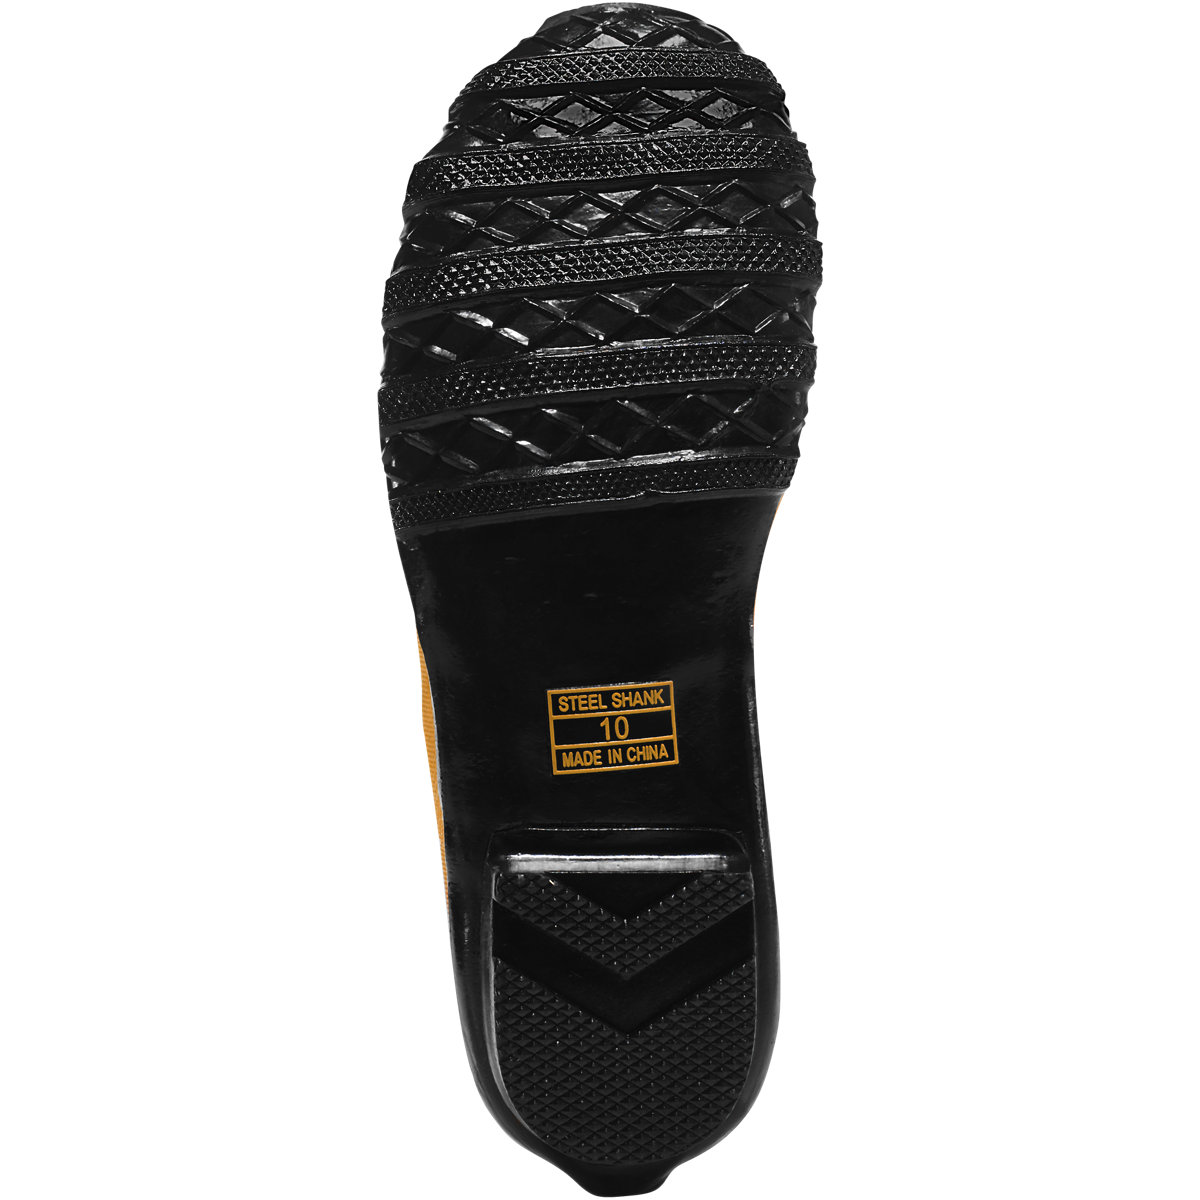 Premium Knee Boot 16" Black SM/ST